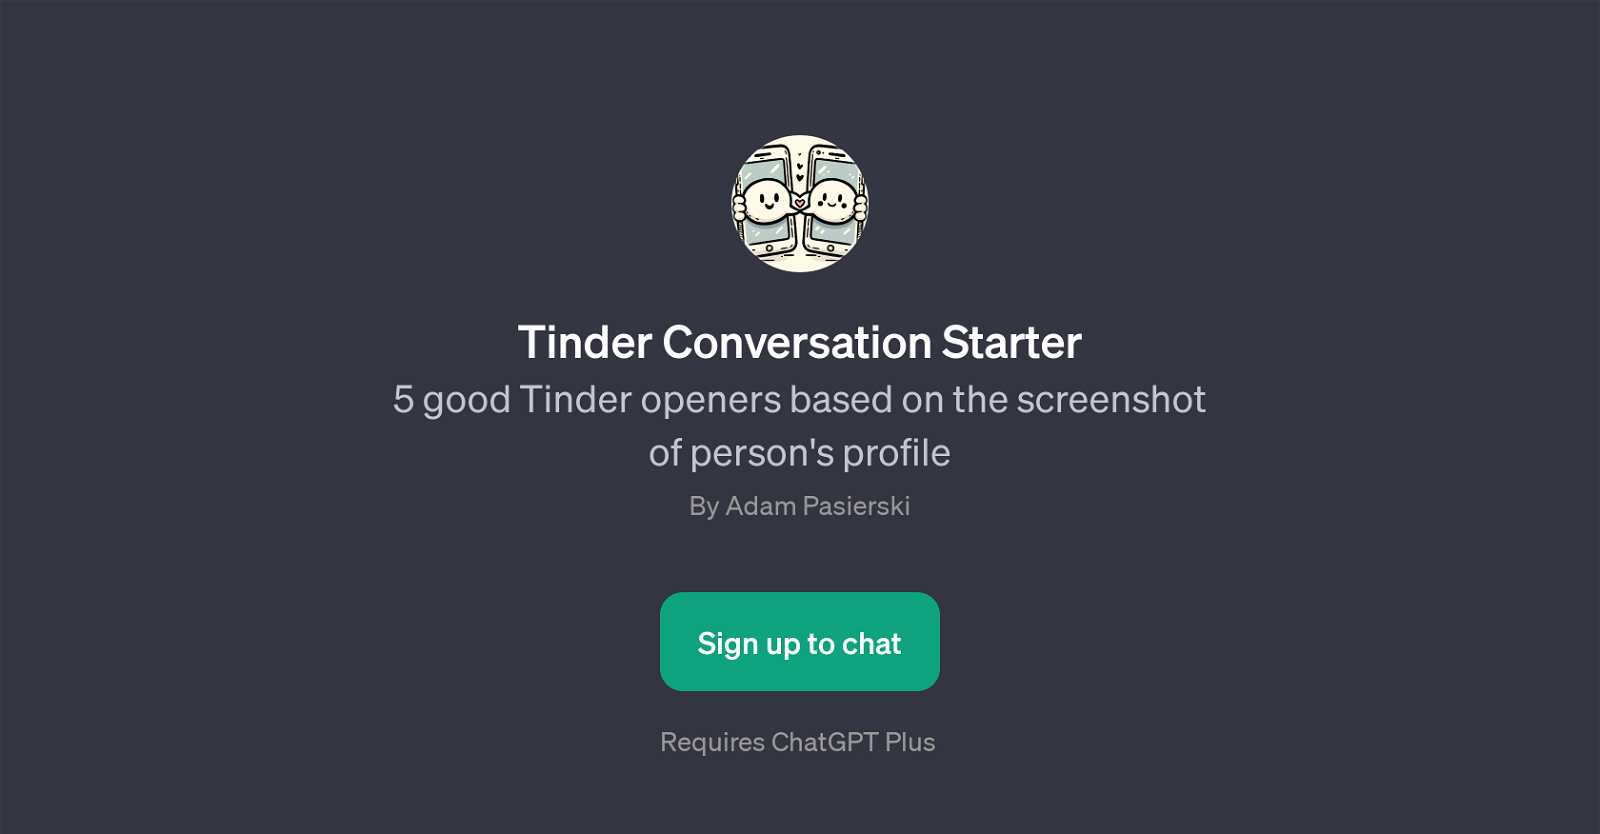 Tinder Conversation Starter website